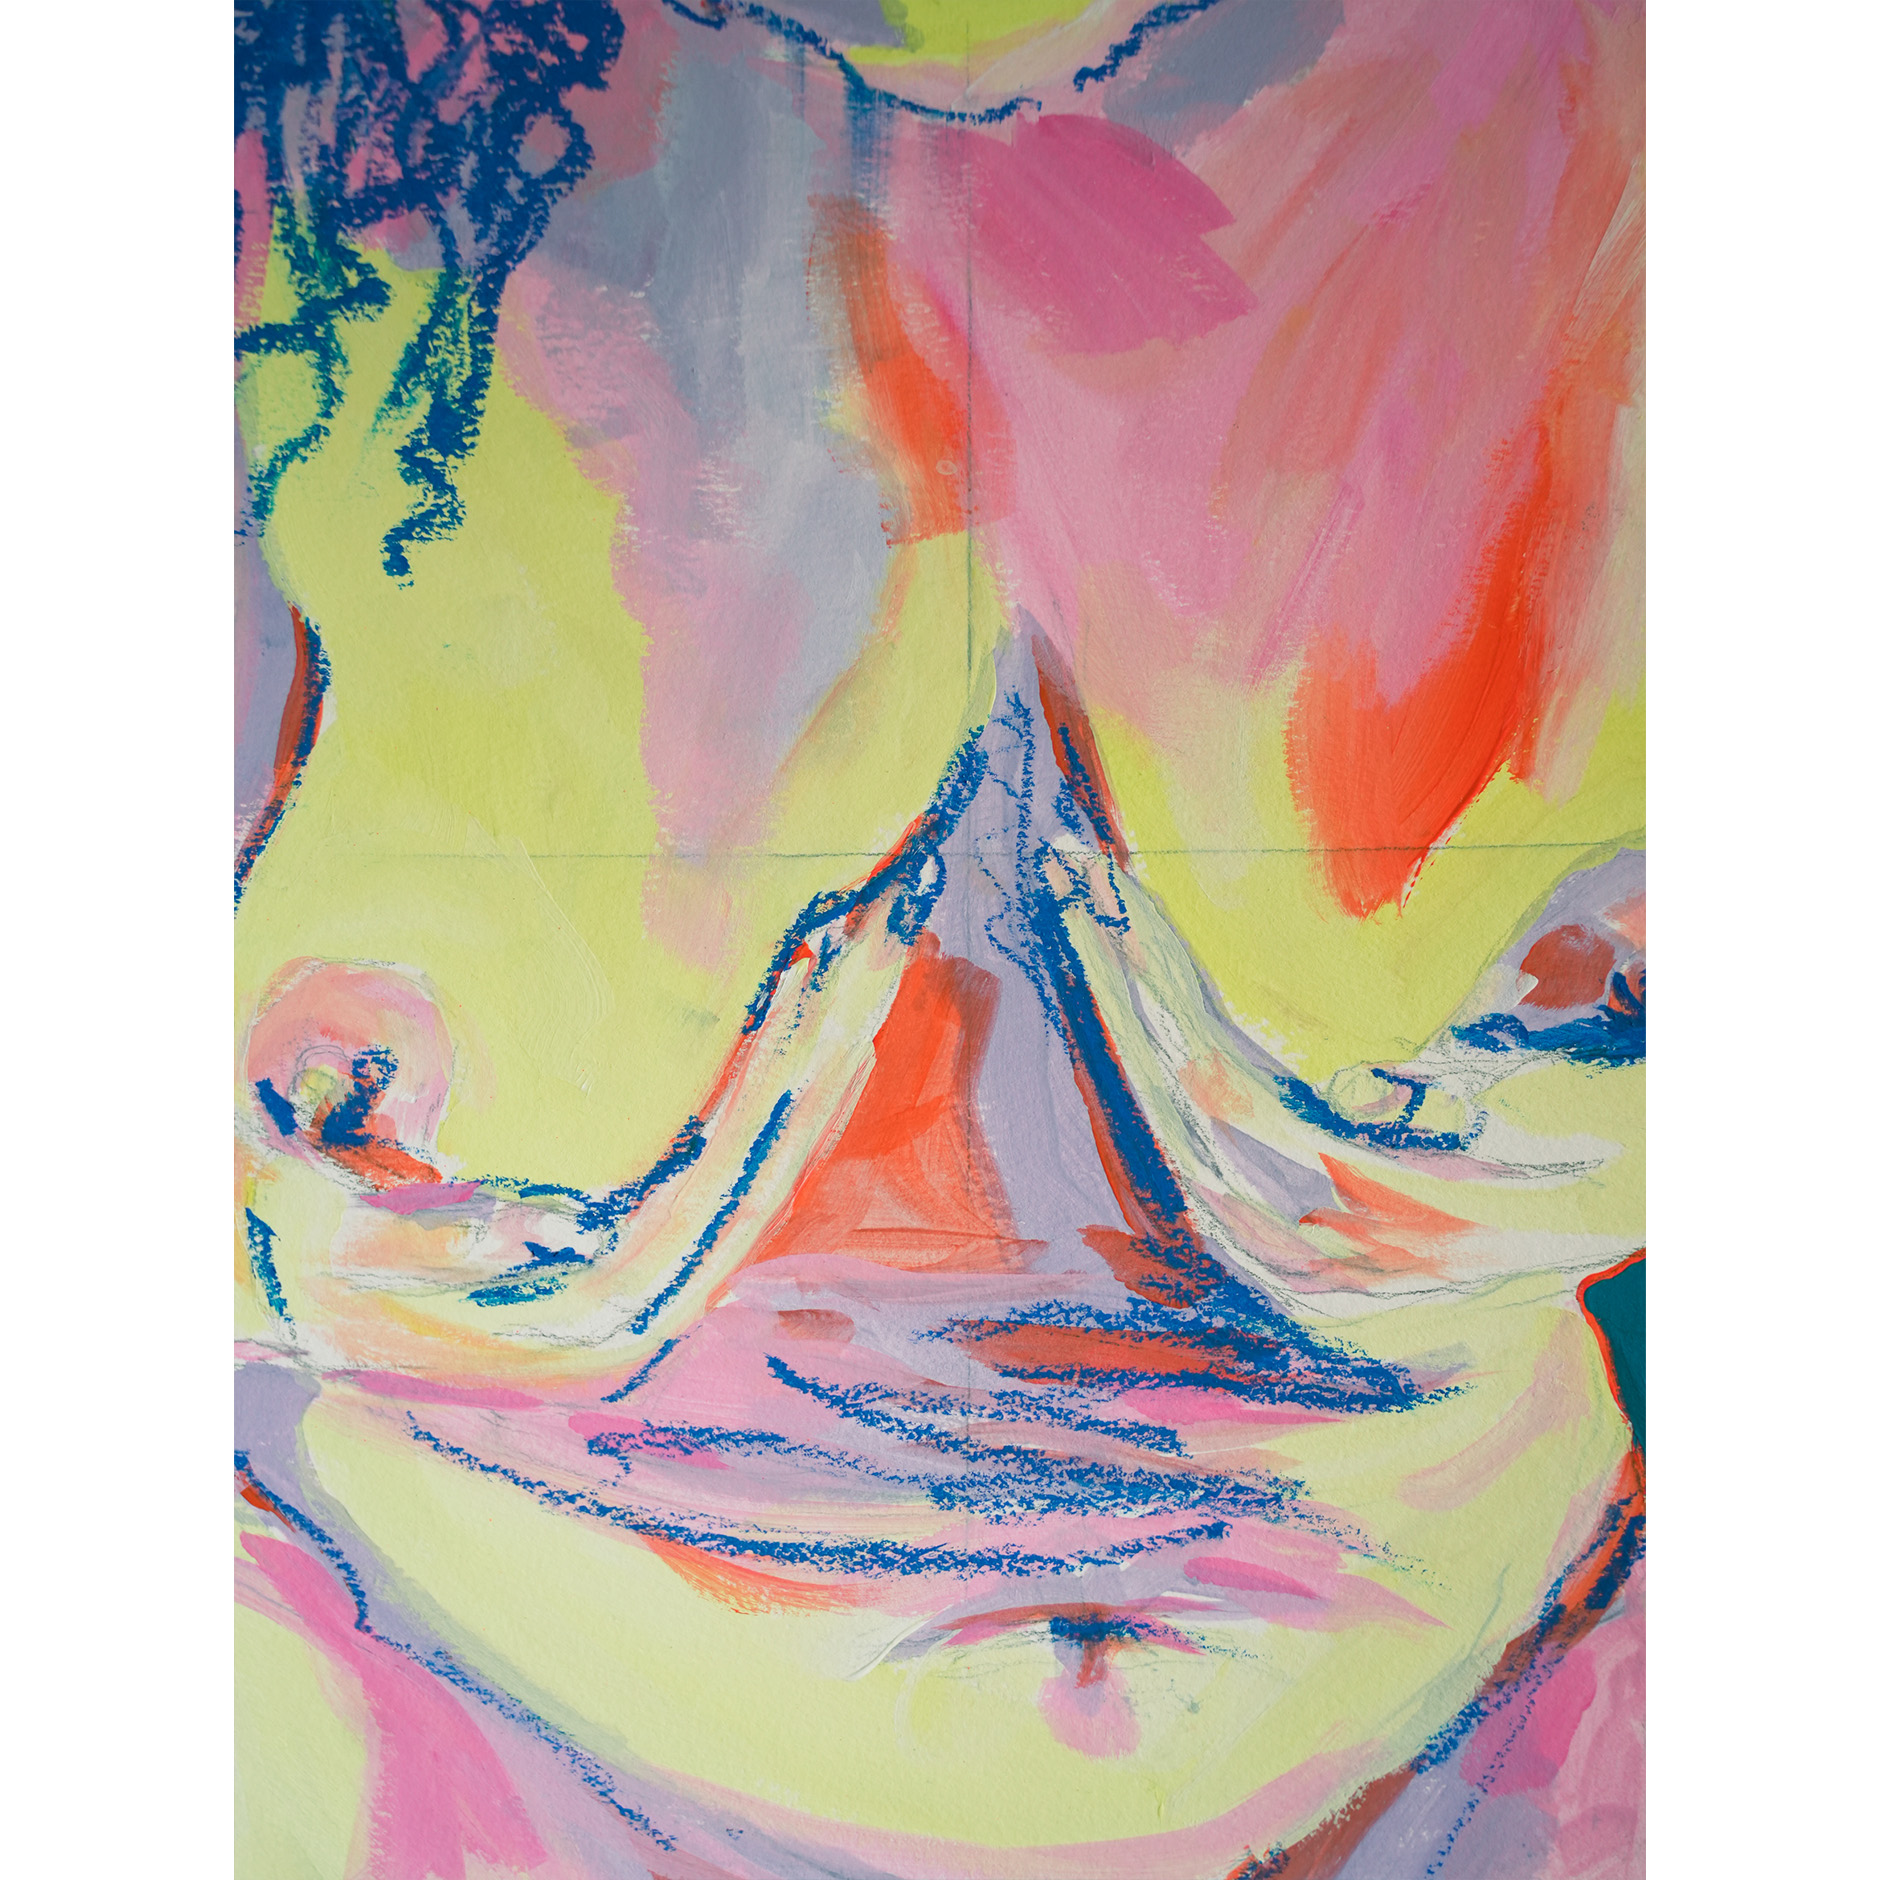 Maison-Soeurs-Noun-Tete-pa-jen-tro-lou-pou-lestomak-peinture-acrylique-et-pastel-a-lhuile-sur-papier-2023-40,5x29,5cm-rose-jaune-bleu